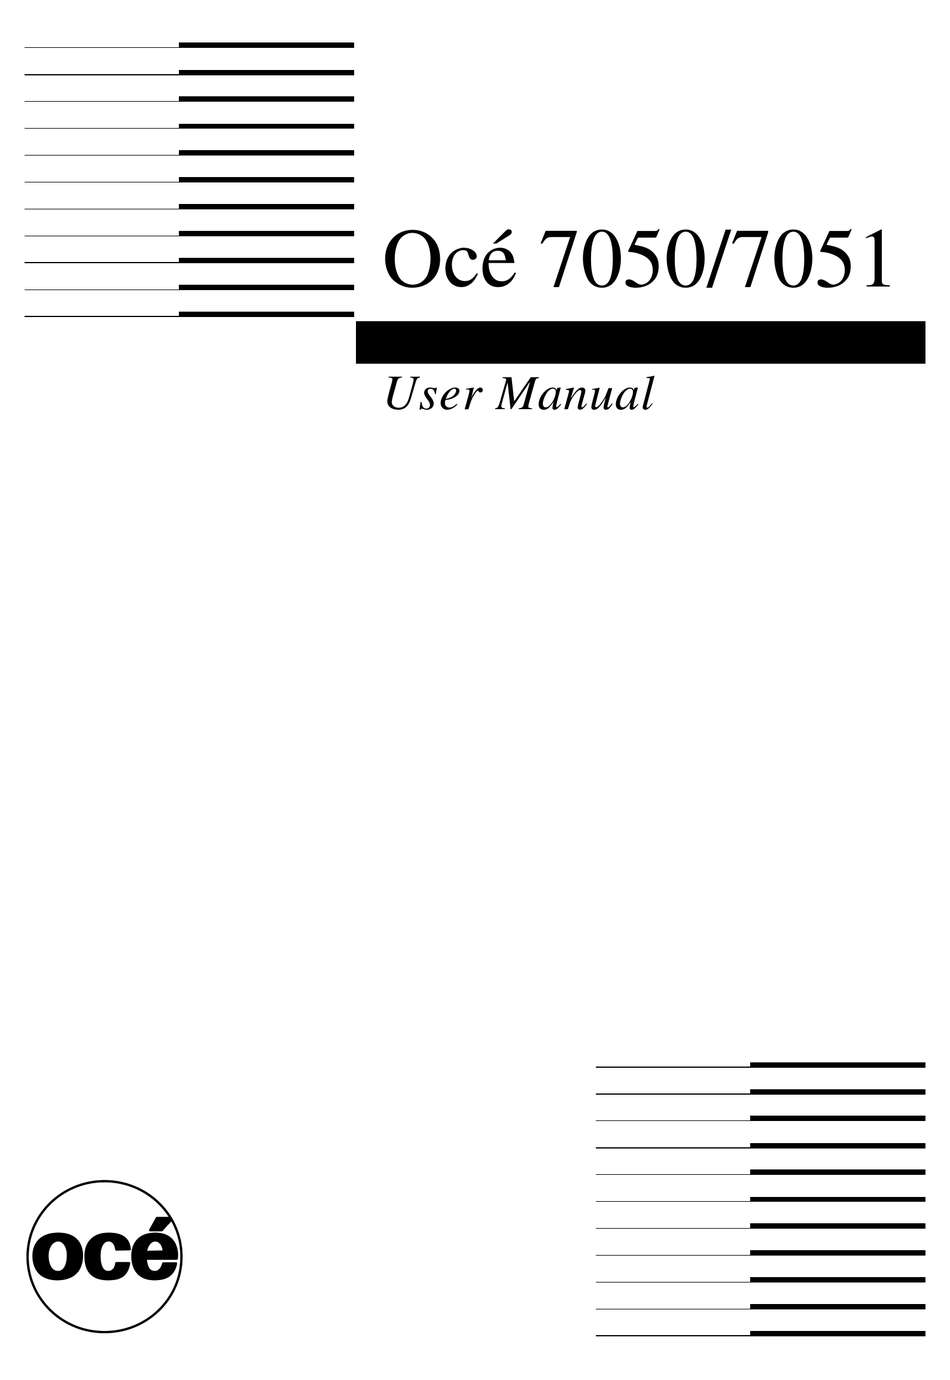 oce-7050-user-manual-pdf-download-manualslib